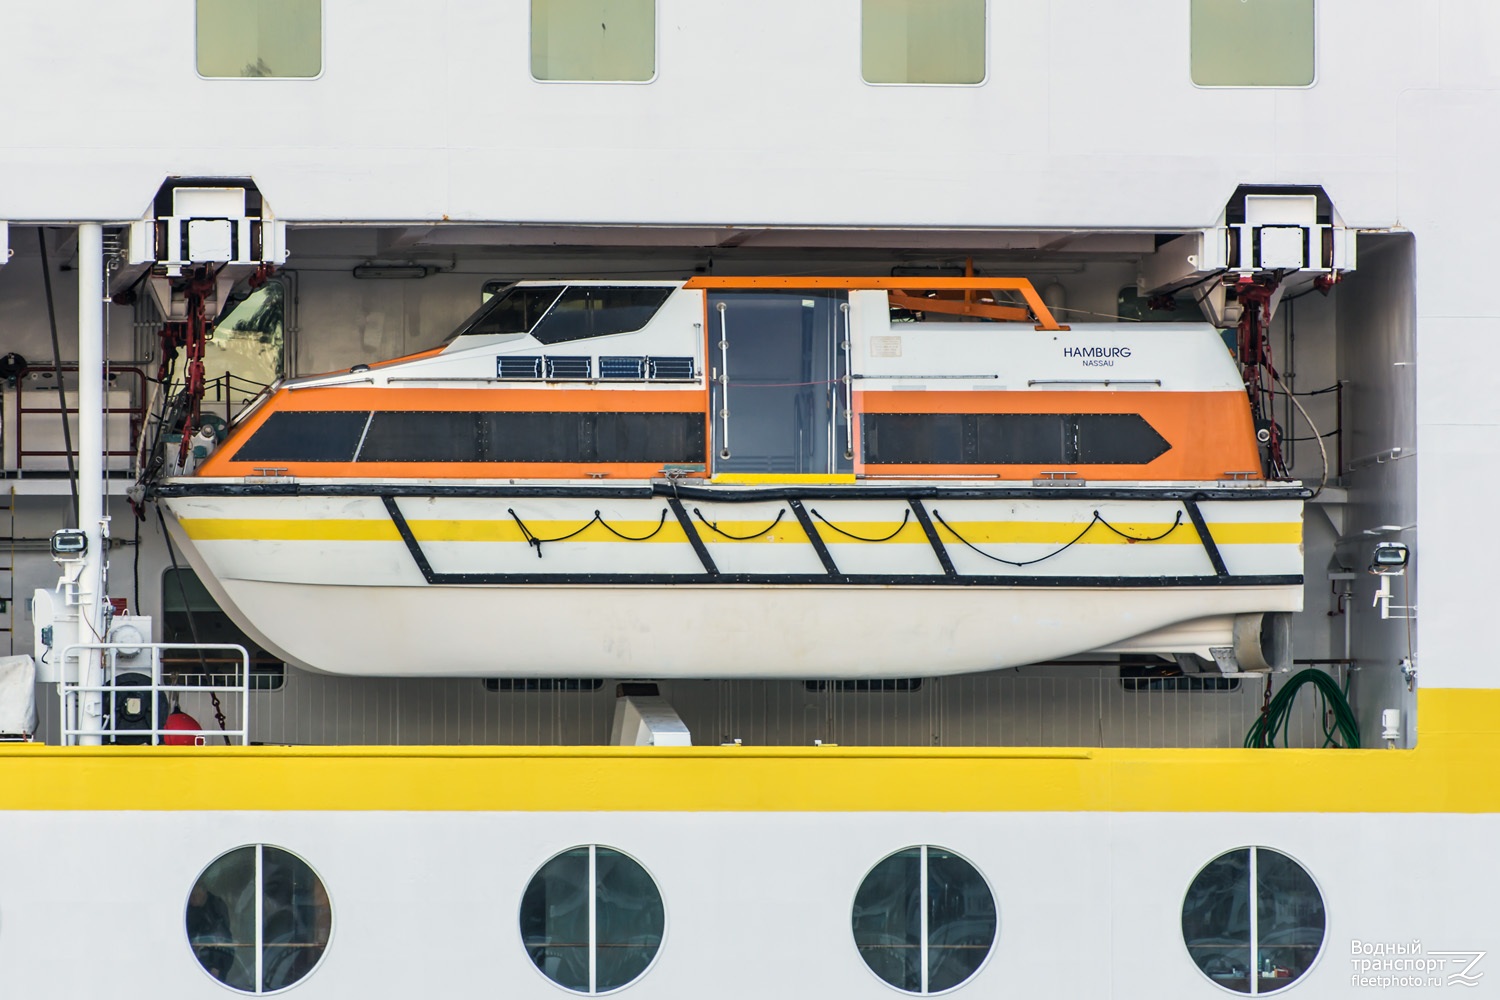 Hamburg. Lifeboats